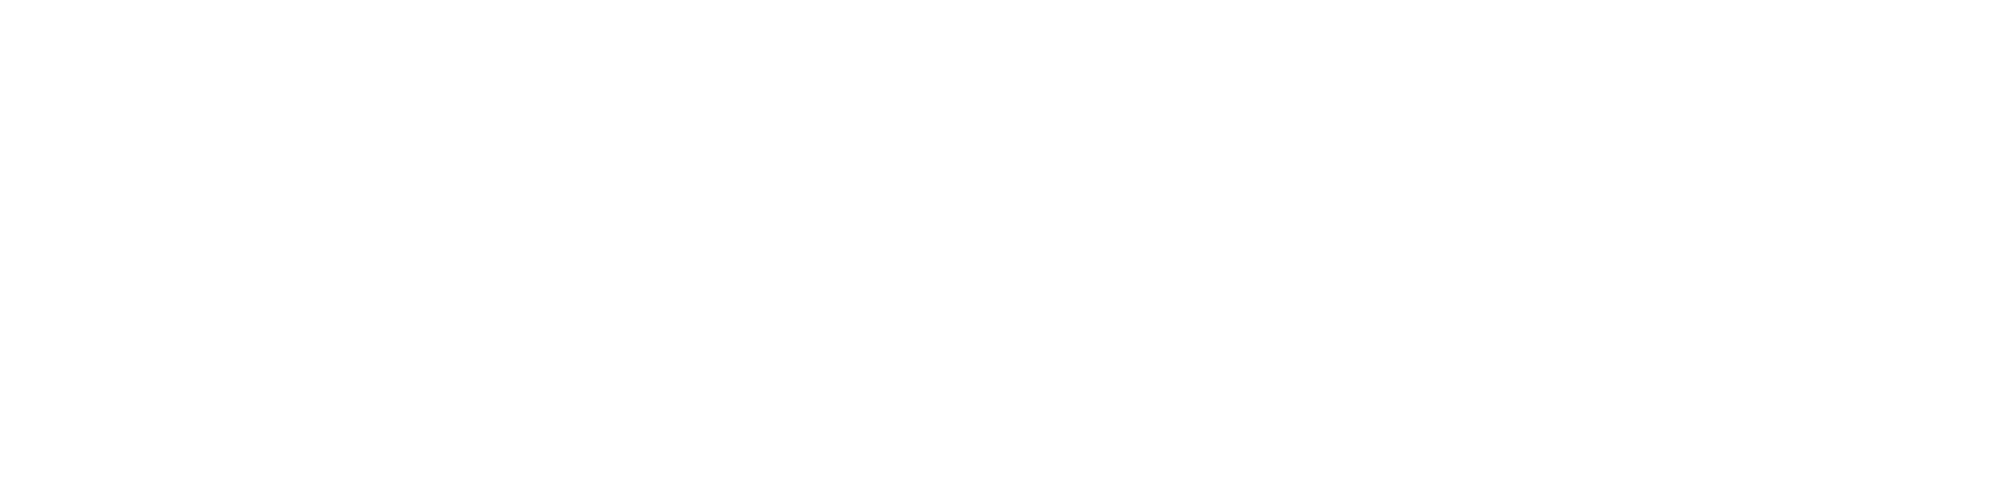 Пермский университет. Классика будущего. Логотип